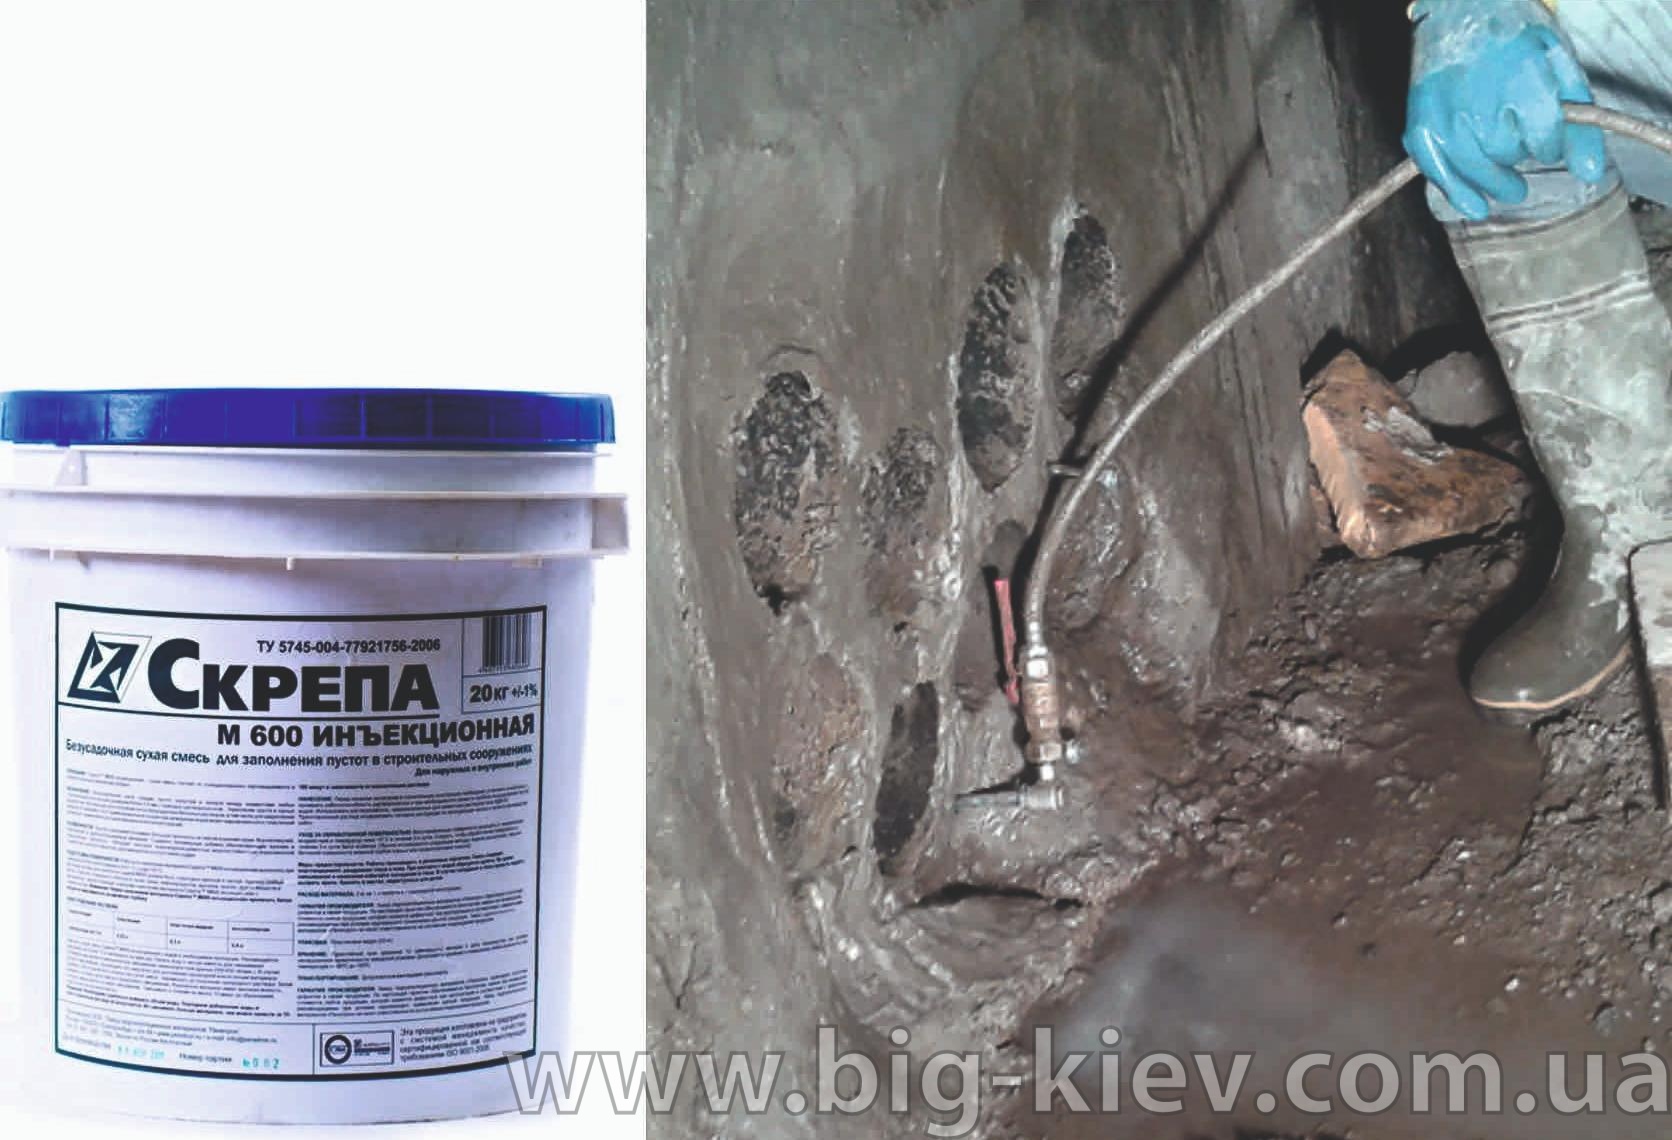  для ремонта бетона, скрепа инъекционная М600 - «БиГ »